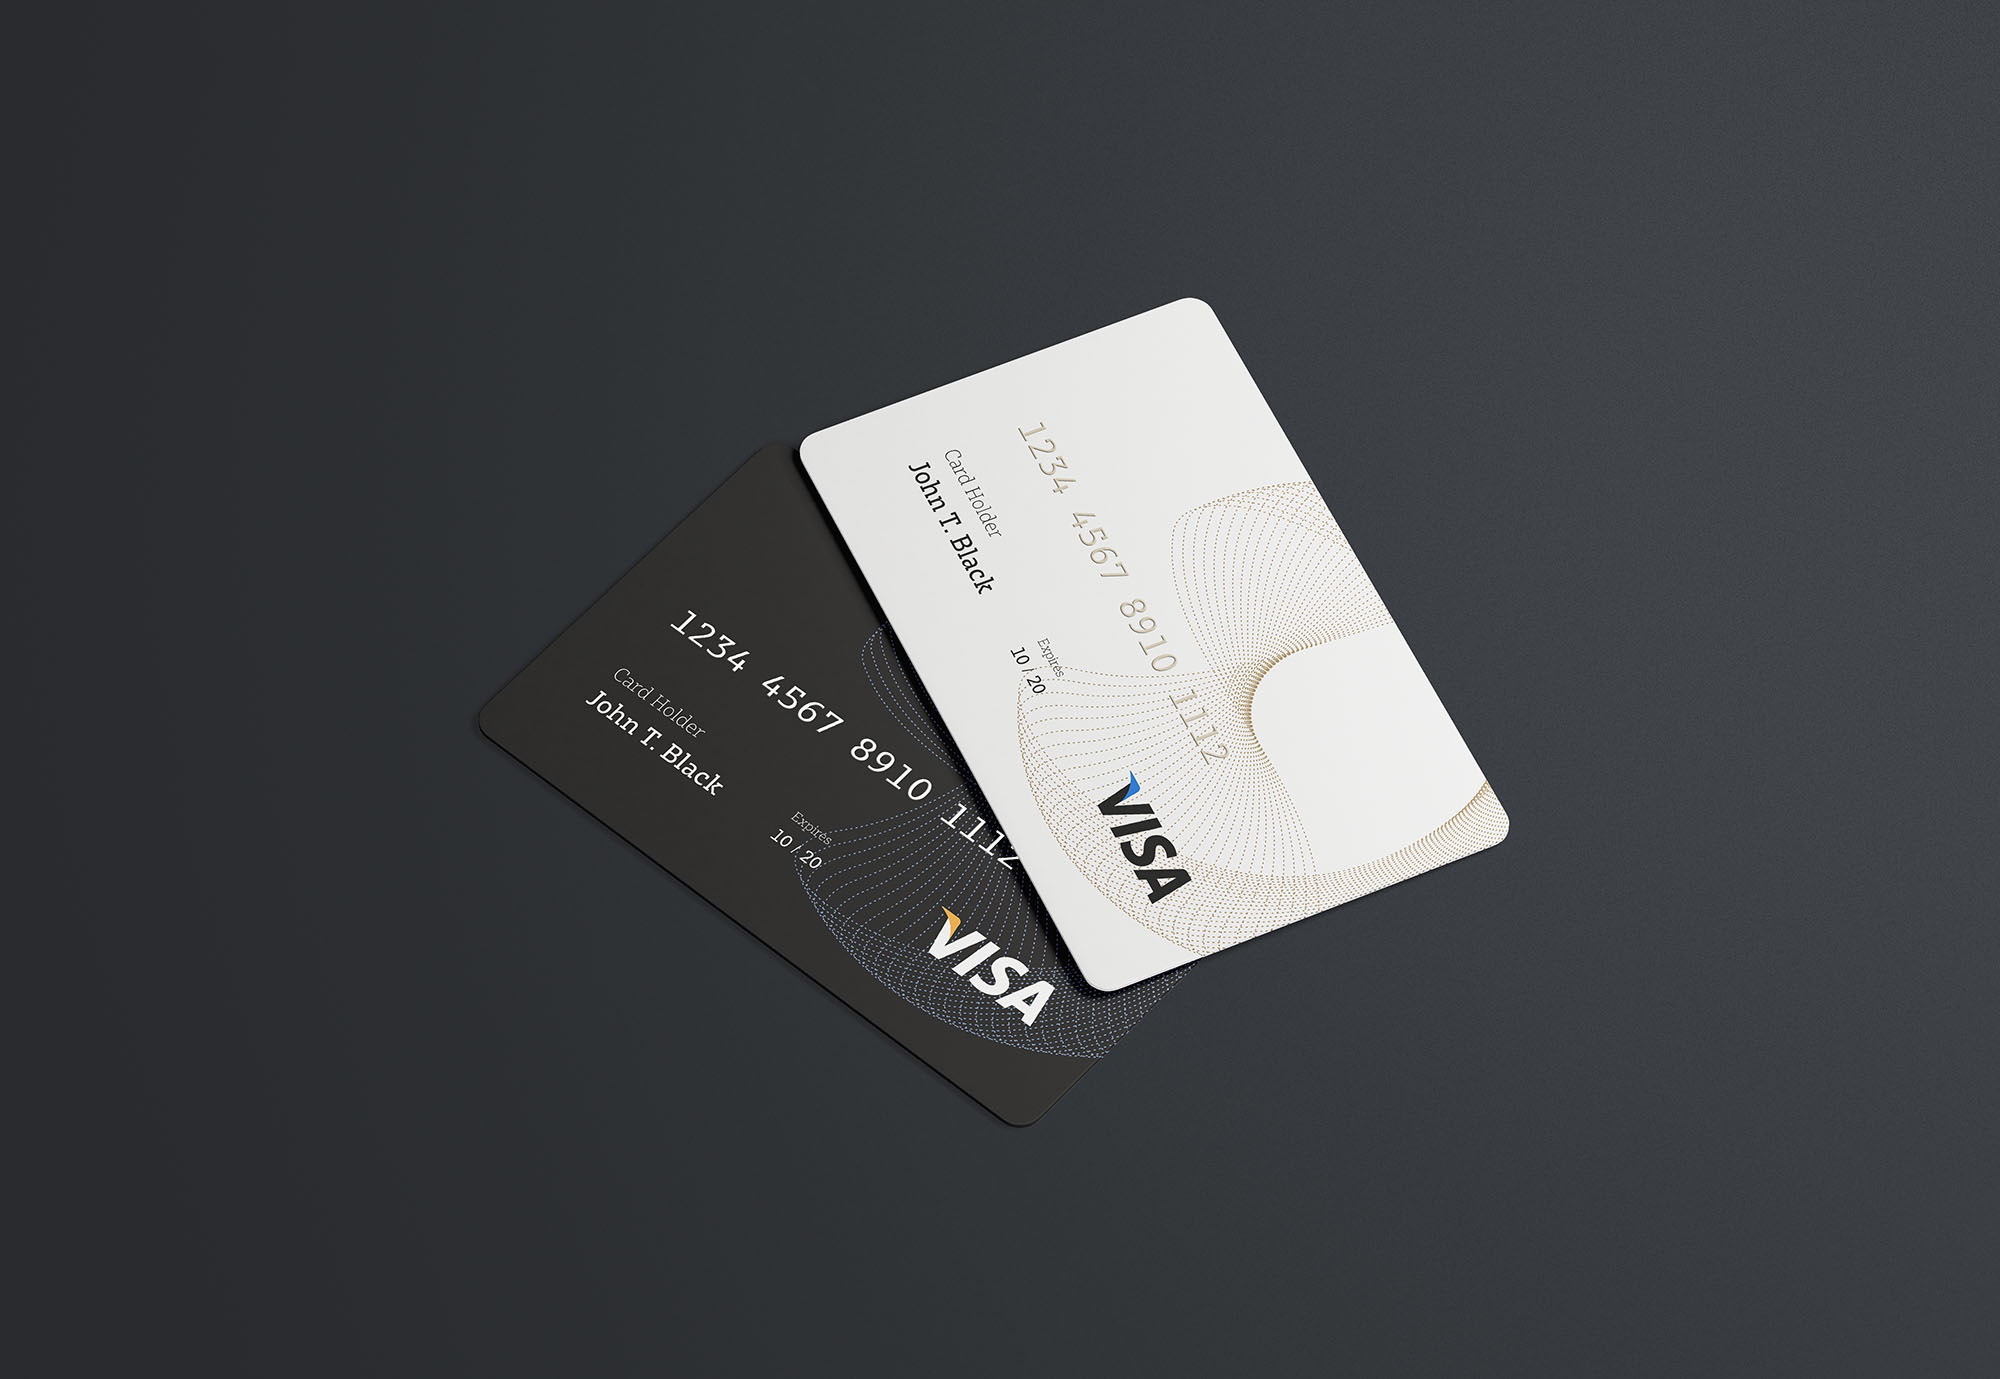 黑白色信用卡展示样机 Black And White Credit Card Display Mockup插图